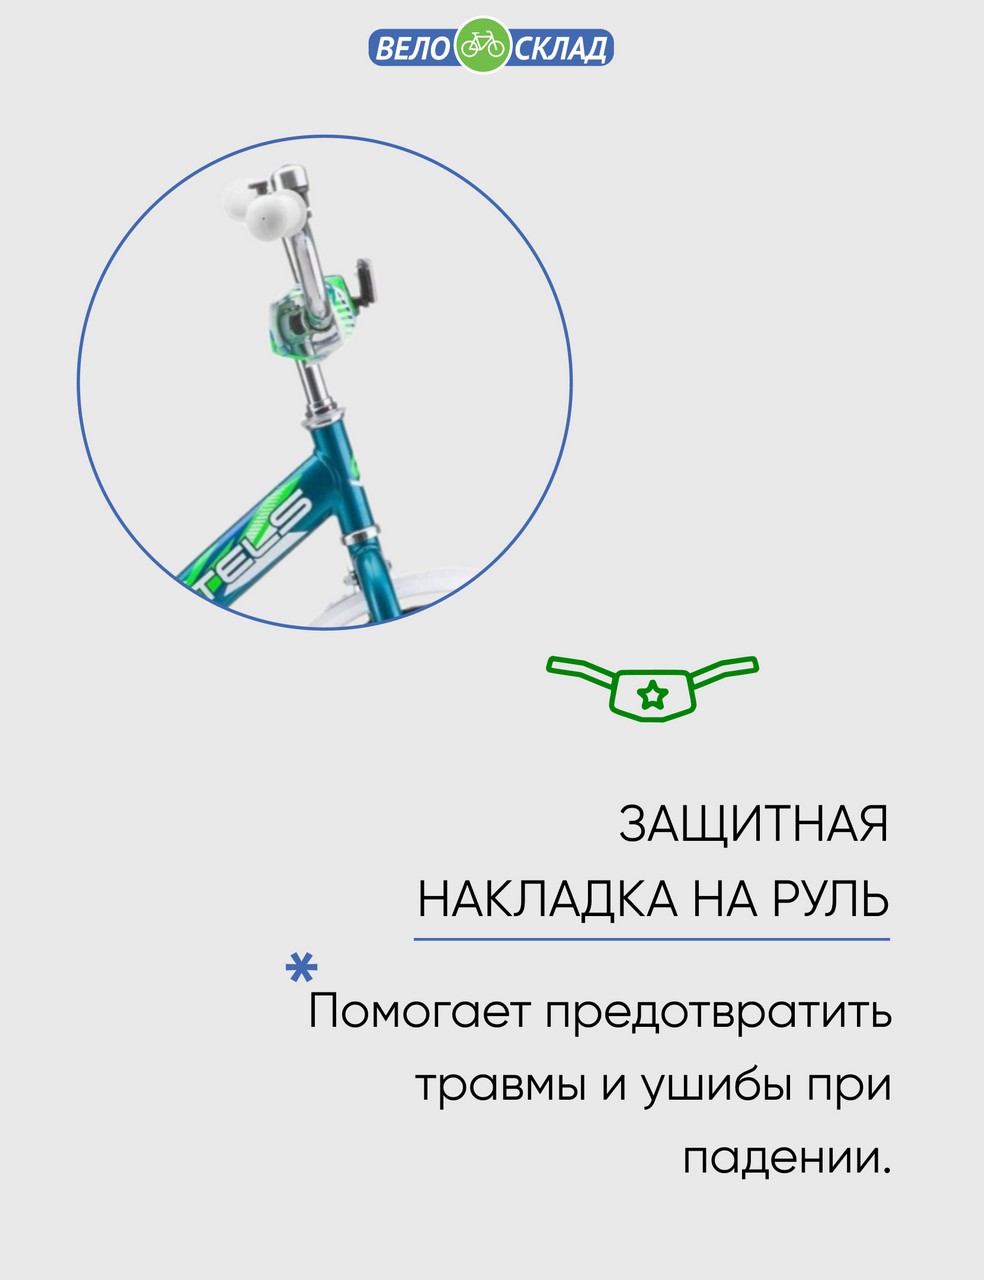 фото Детский велосипед stels talisman 14 z010, год 2023, цвет голубой-зеленый